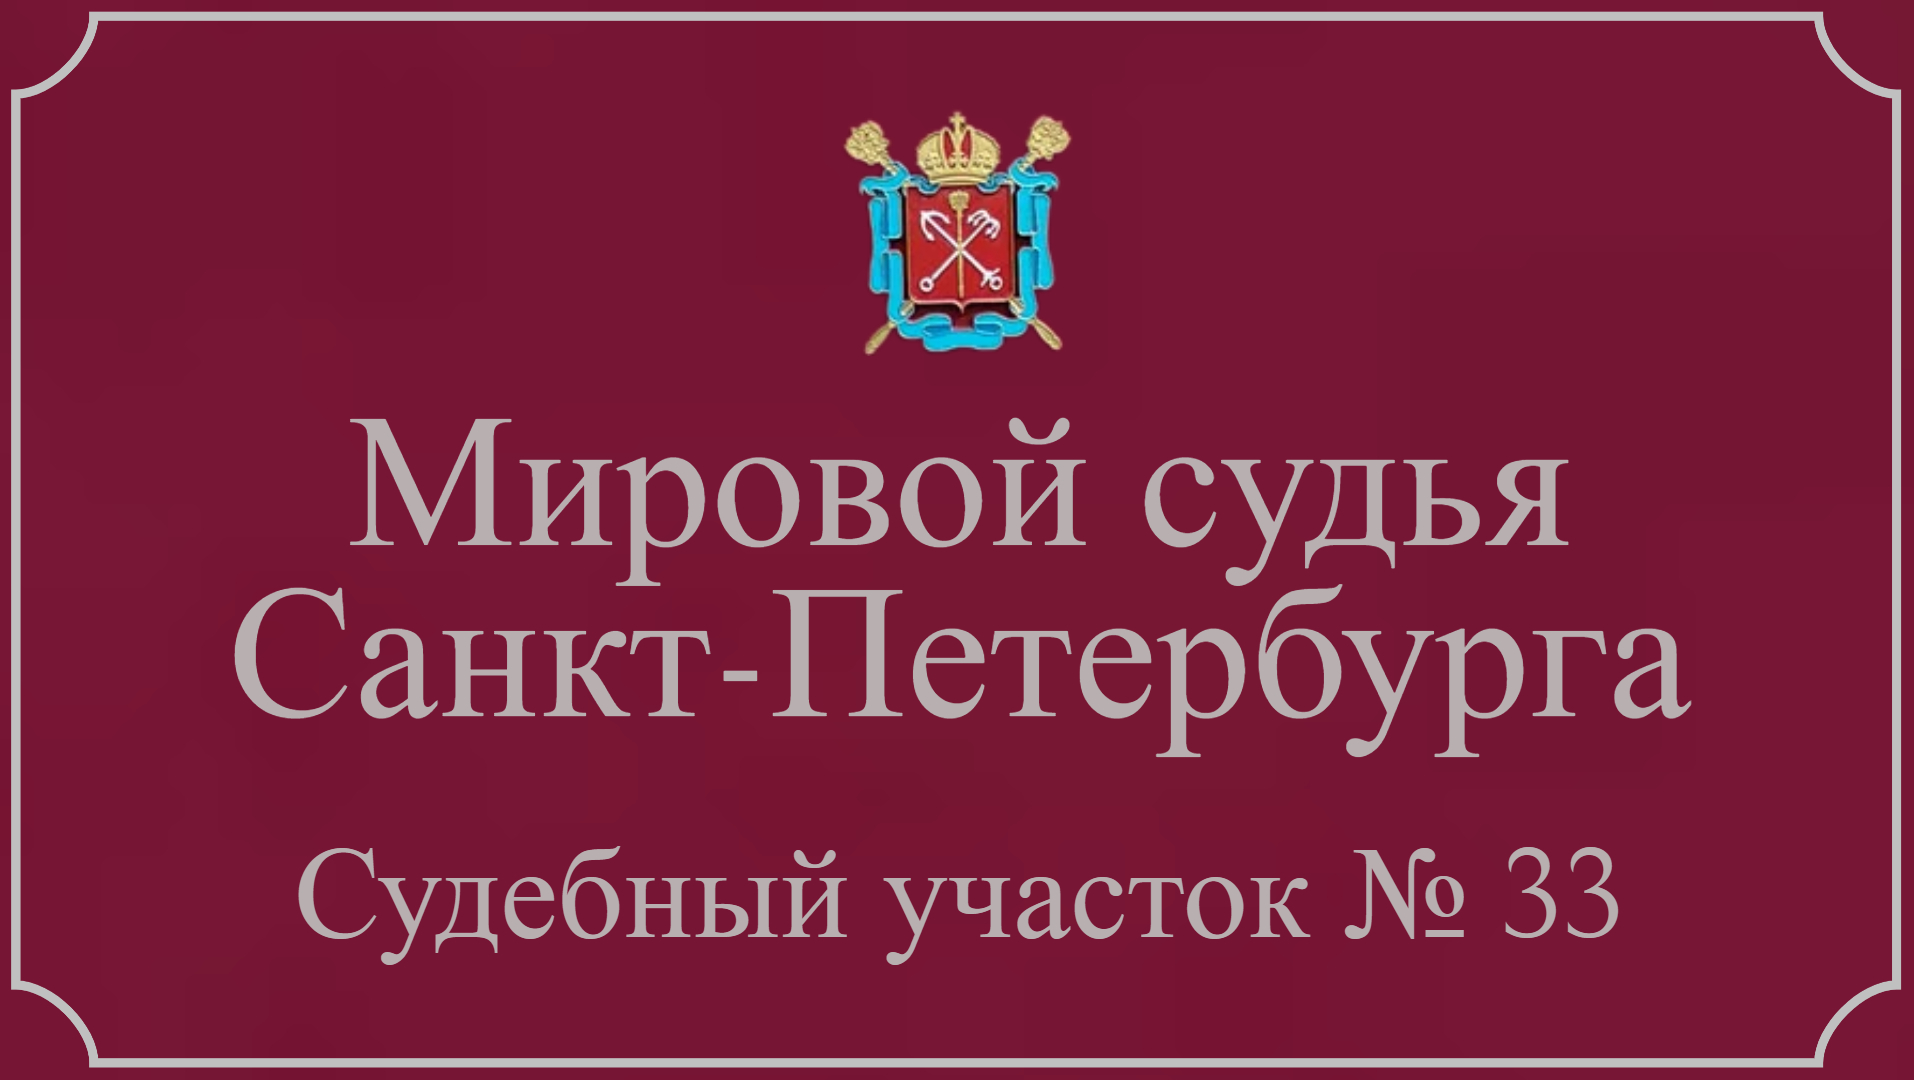 Информация по 33 судебному участку в Санкт-Петербурге.